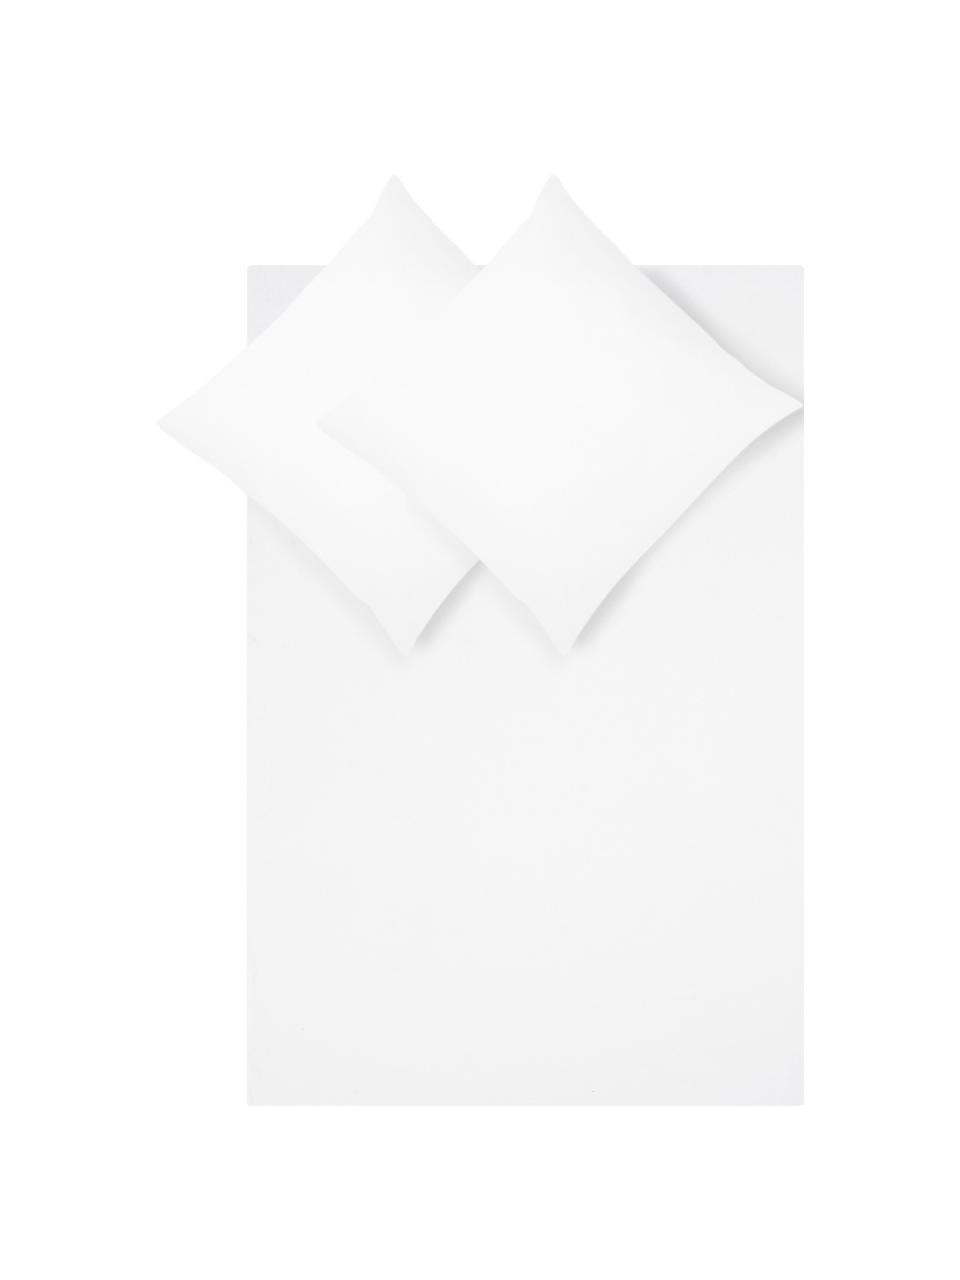 Flanell-Bettwäsche Biba in Weiss, Webart: Flanell Flanell ist ein k, Weiss, 135 x 200 cm + 1 Kissen 80 x 80 cm